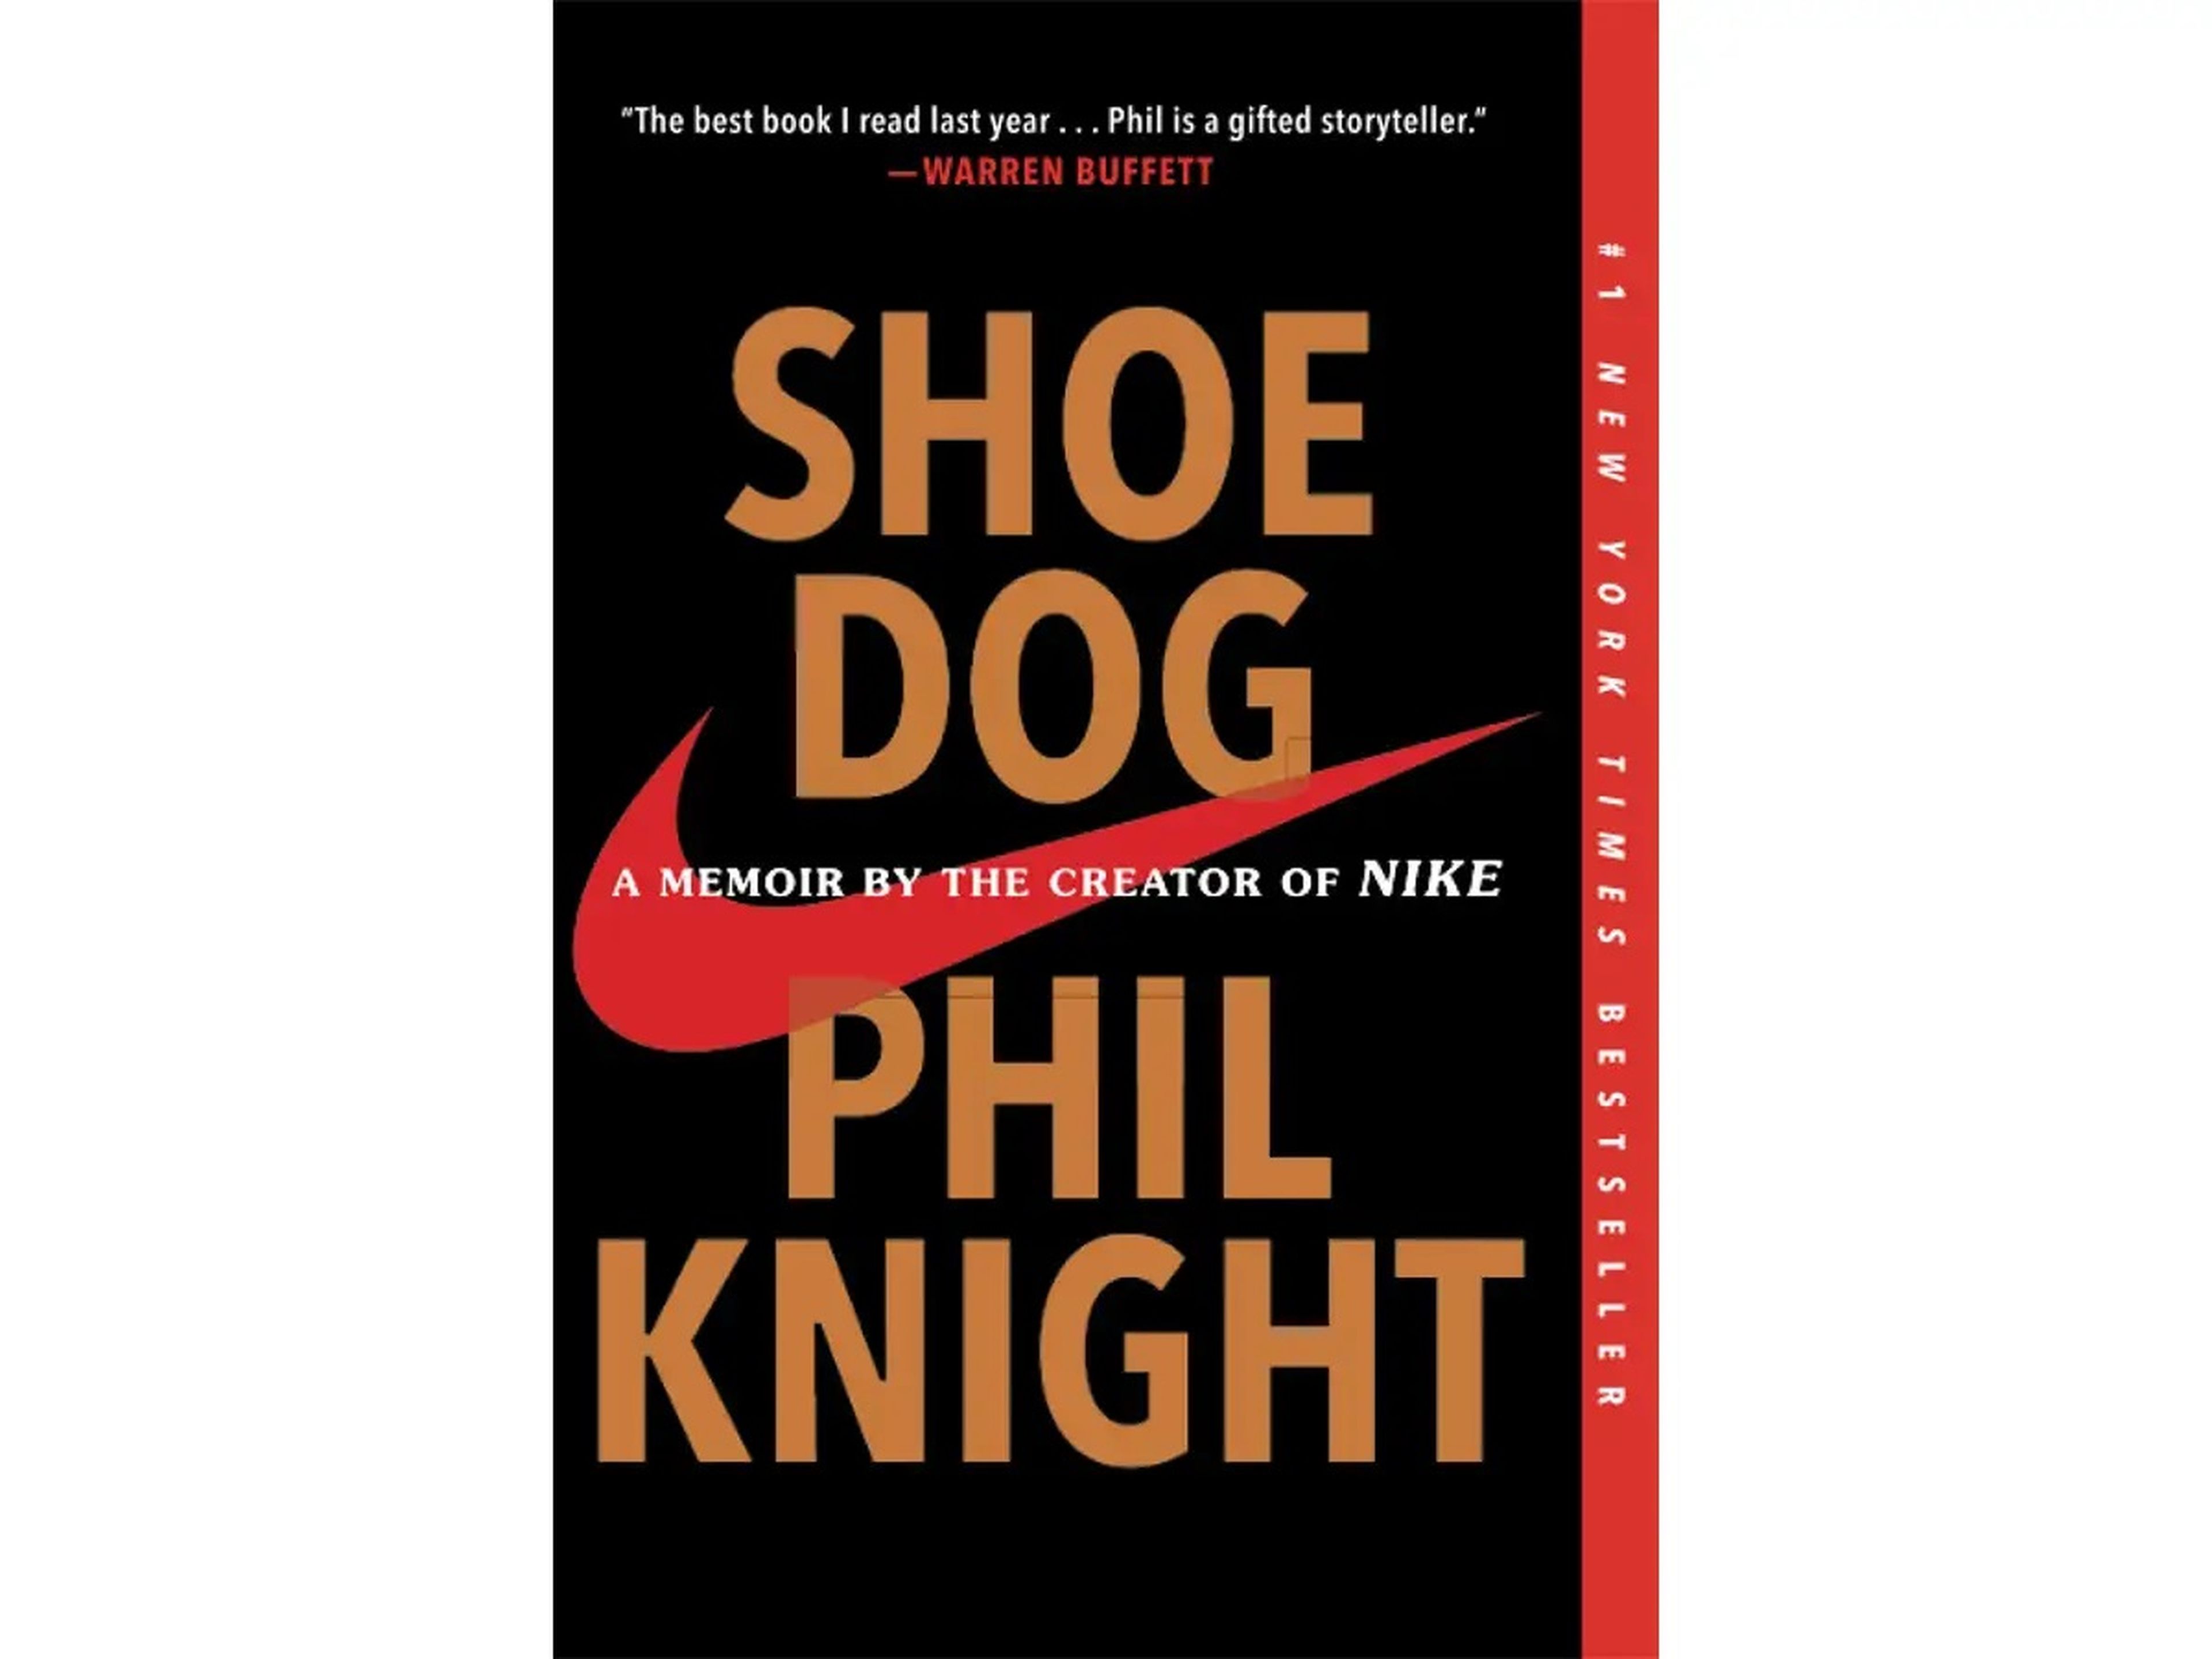 'Nunca te pares: Autobiografía del fundador de Nike' de Phil Knight.